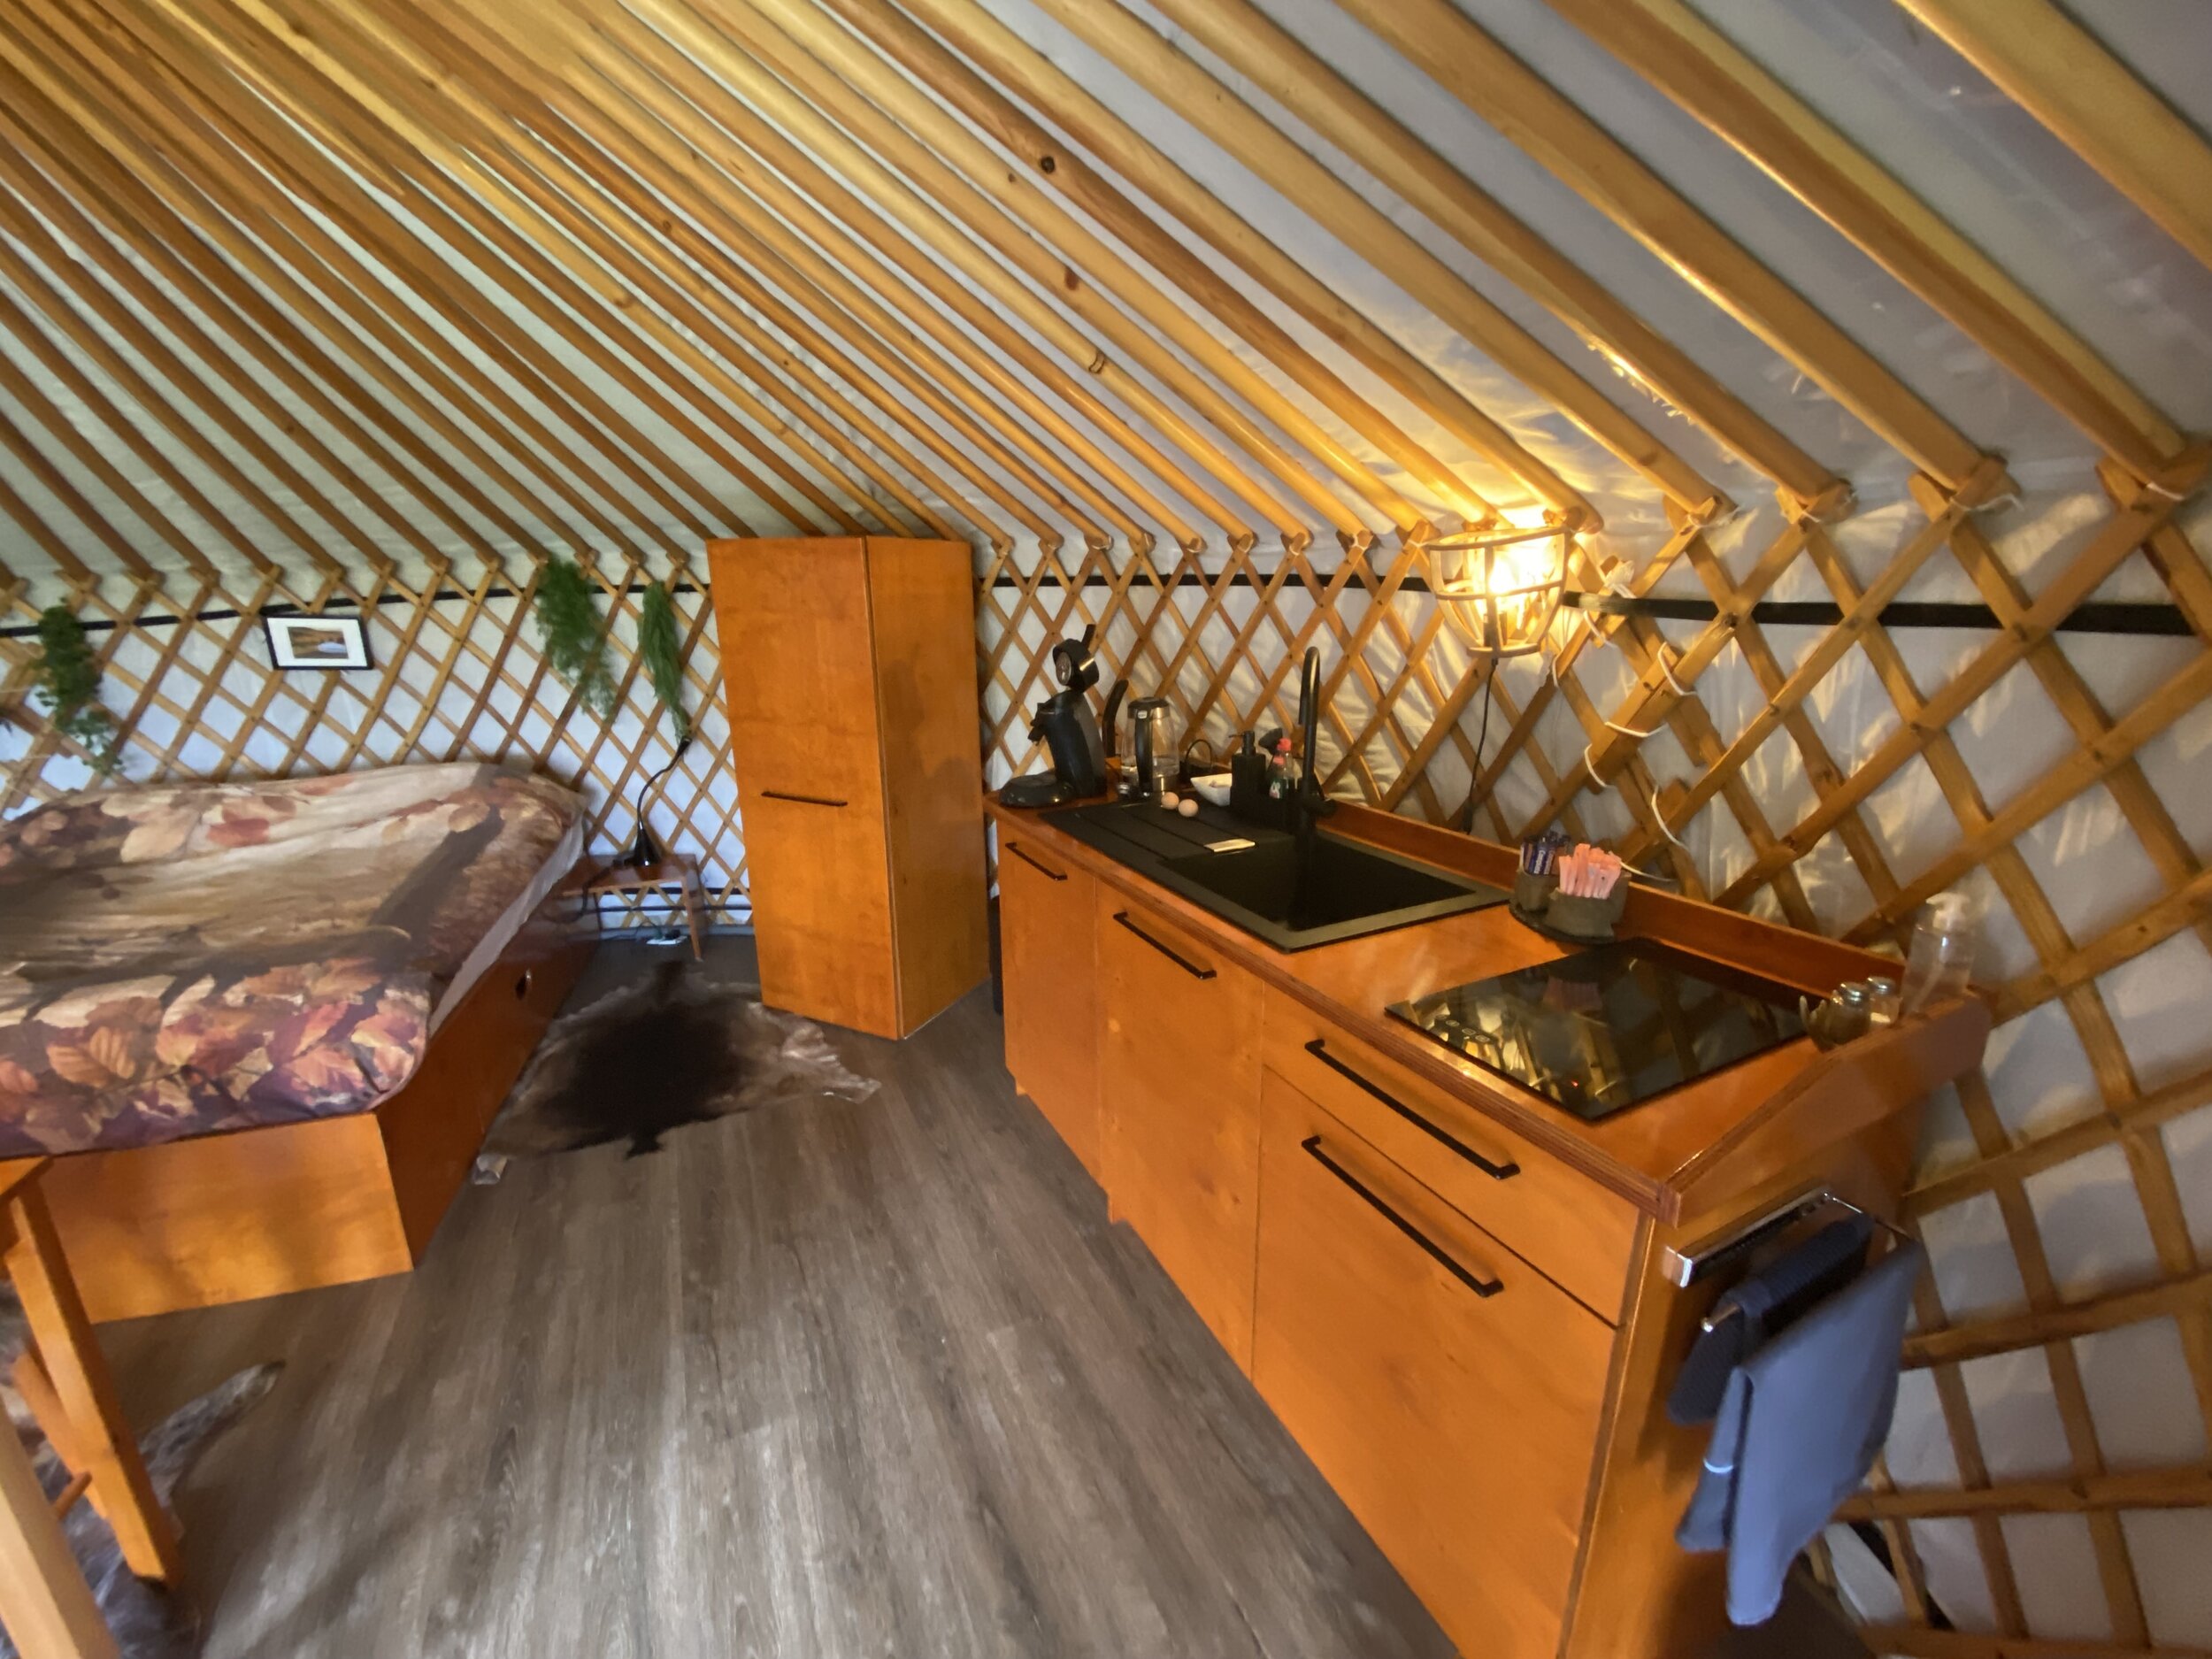 slapen yurt nederland.jpg